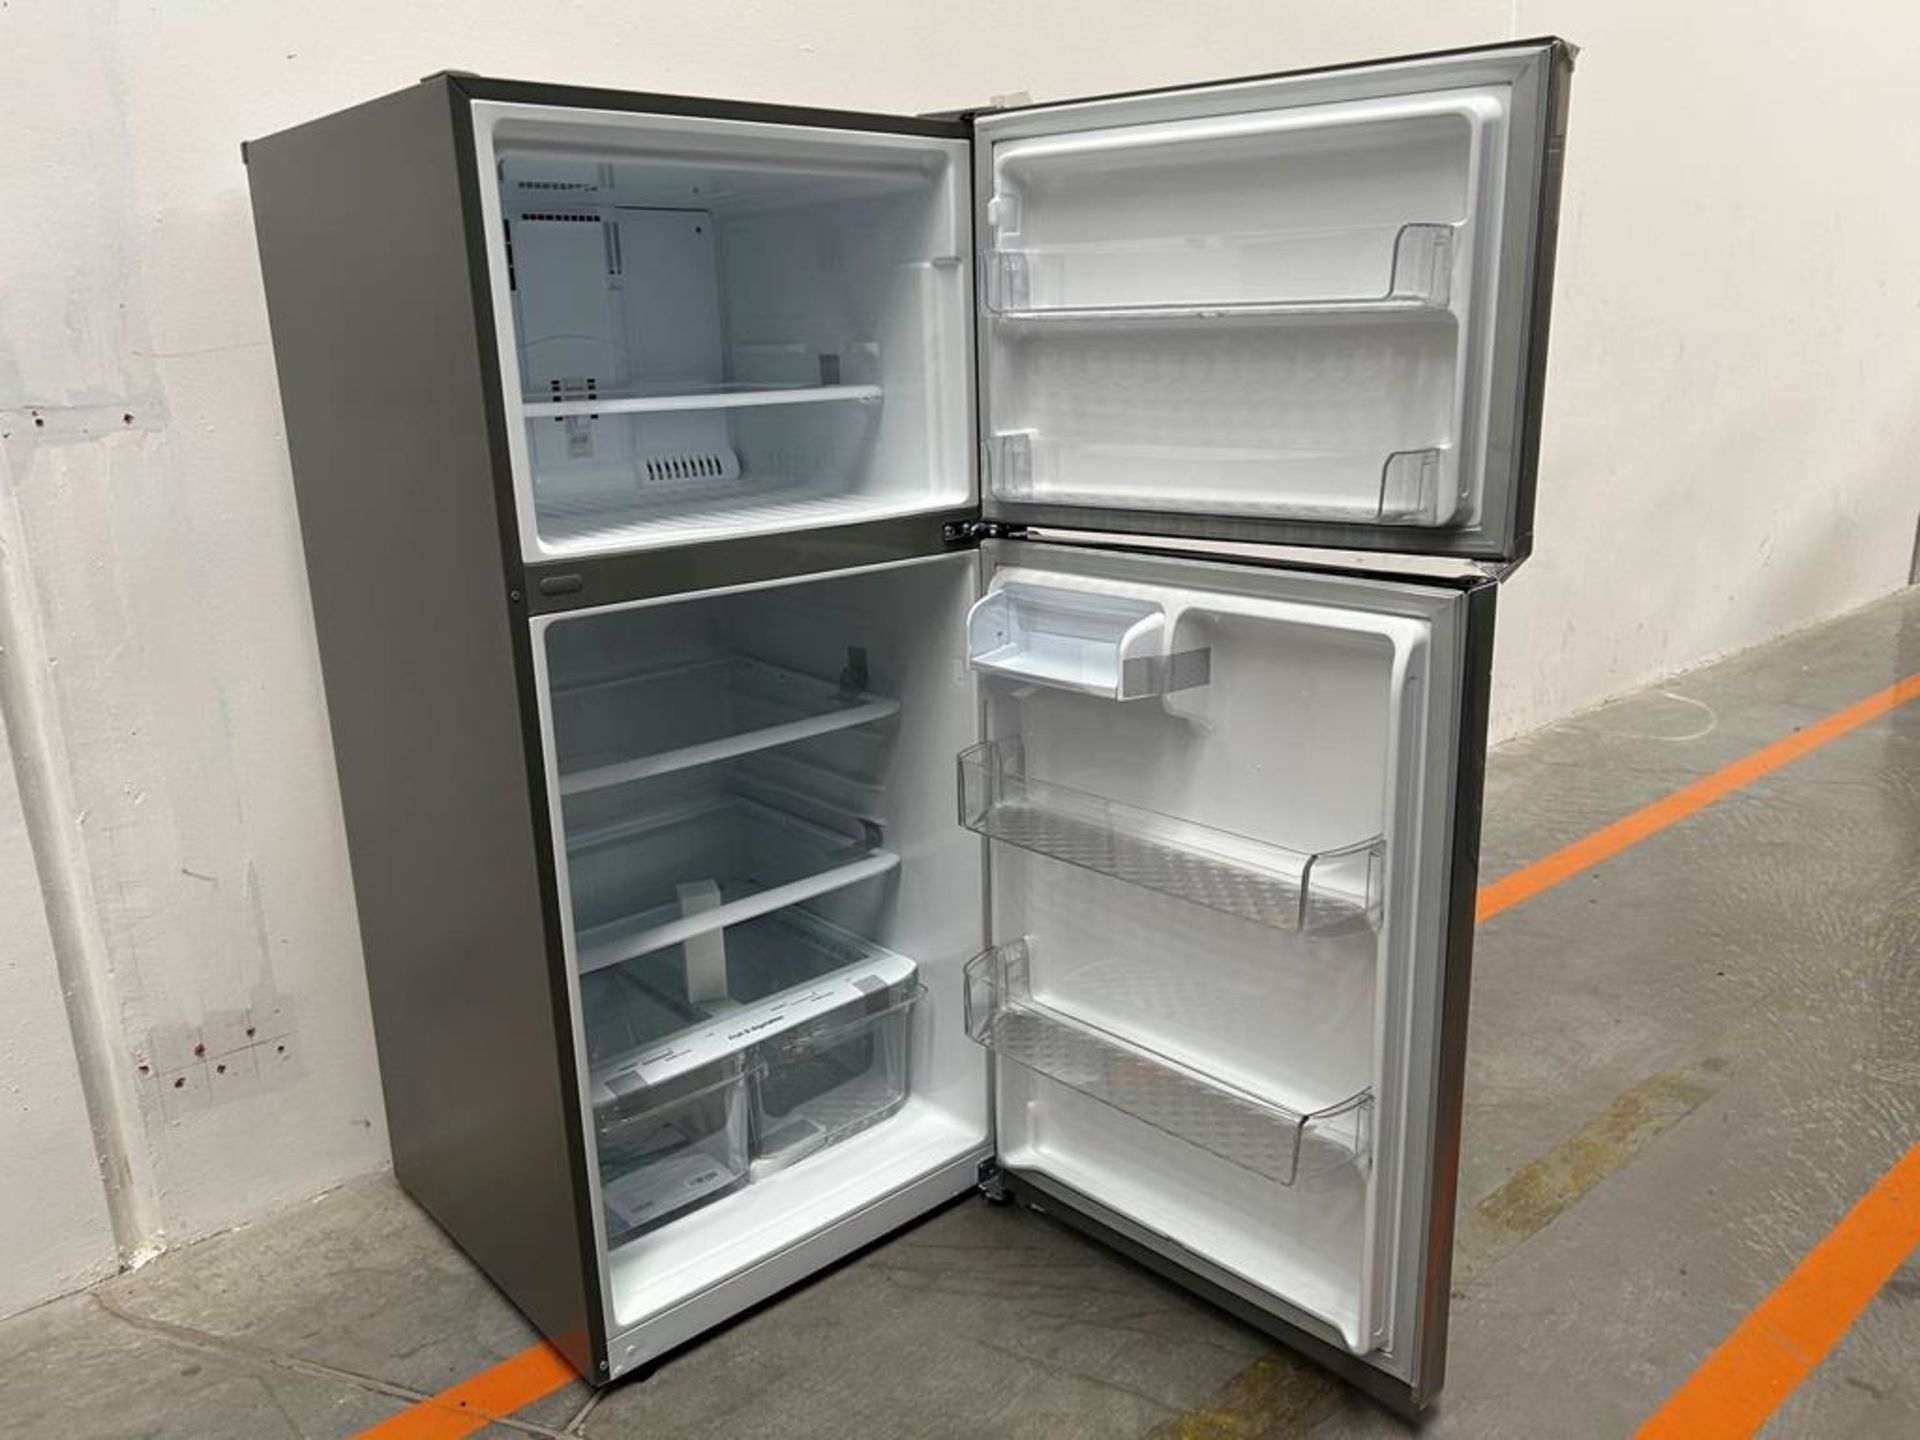 (NUEVO) Refrigerador Marca LG, Modelo LT57BPSX, Serie P2D419, Color GRIS - Image 4 of 11